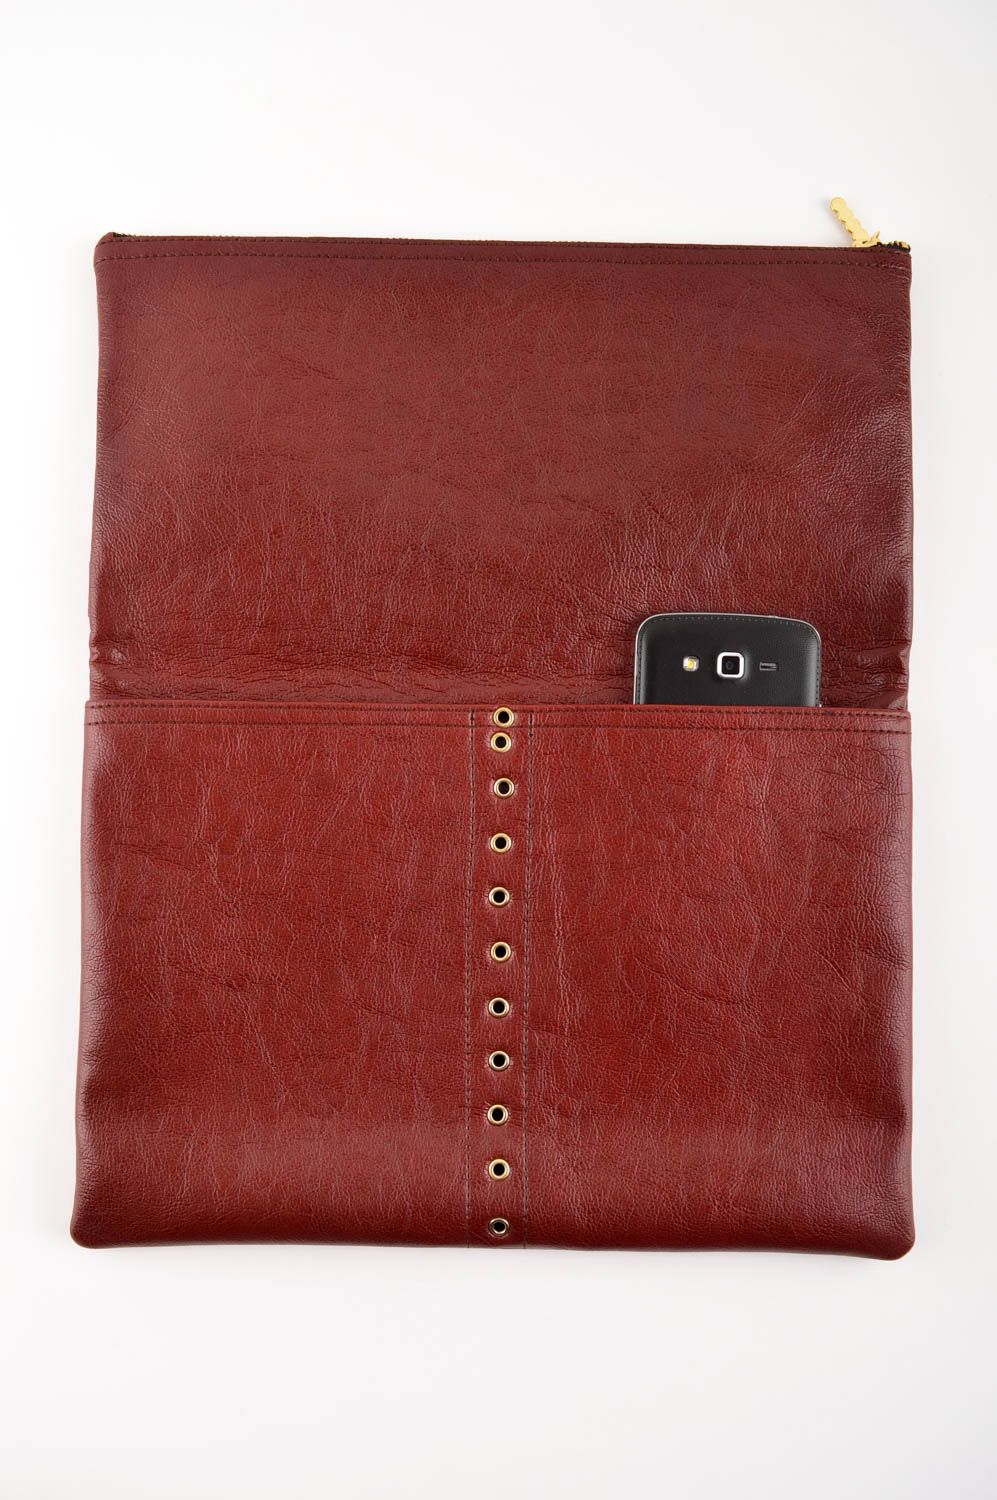 Бордовая сумка ручной работы сумочка клатч стильная женская сумка без ручек фото 2